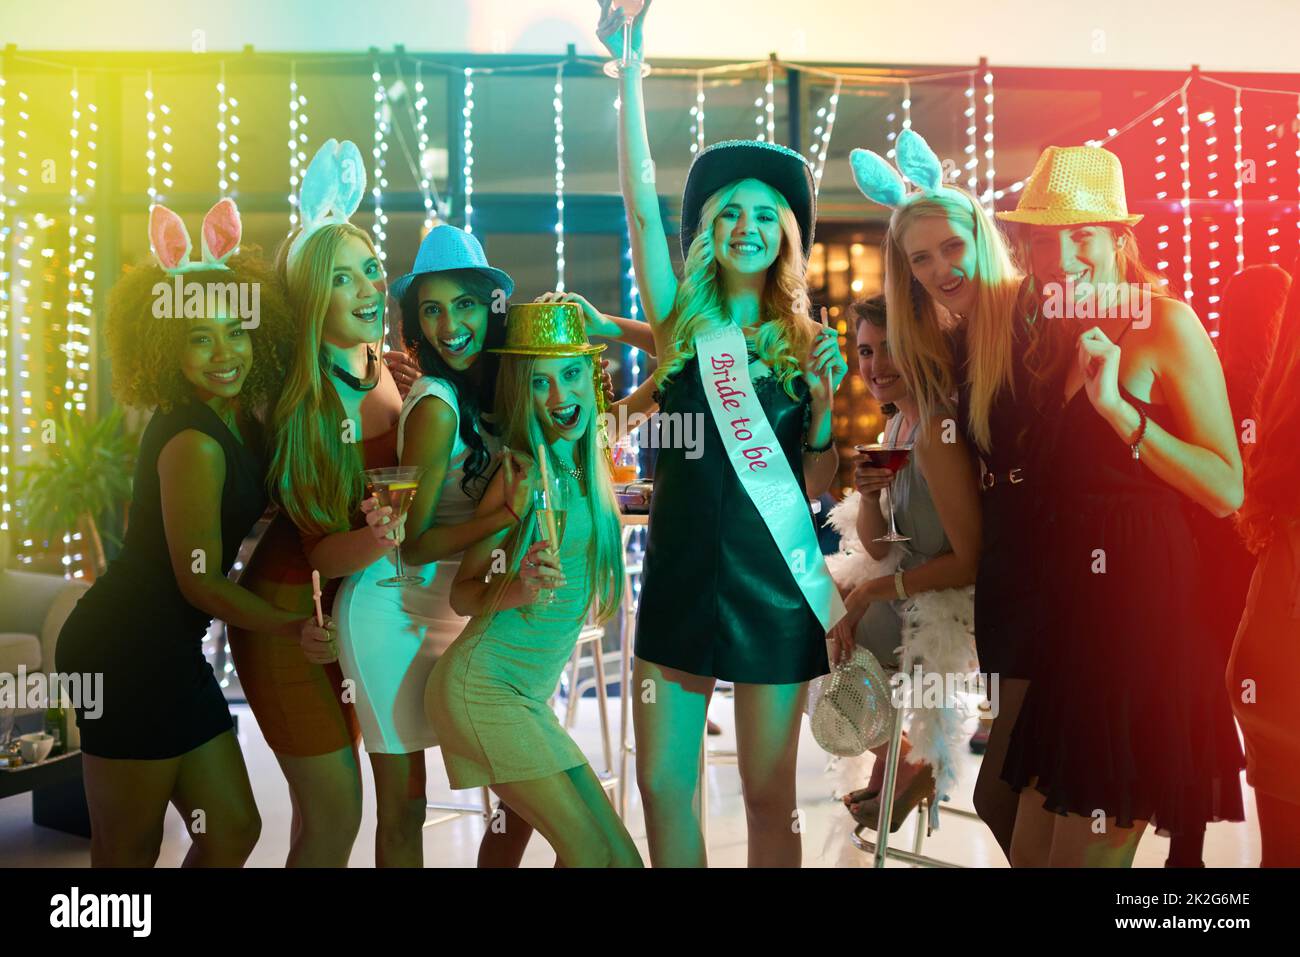 Les festivités de la Bachelorette sont en plein essor. Portrait d'un groupe de jeunes femmes ayant une fête de Bachelorette dans une boîte de nuit. Banque D'Images